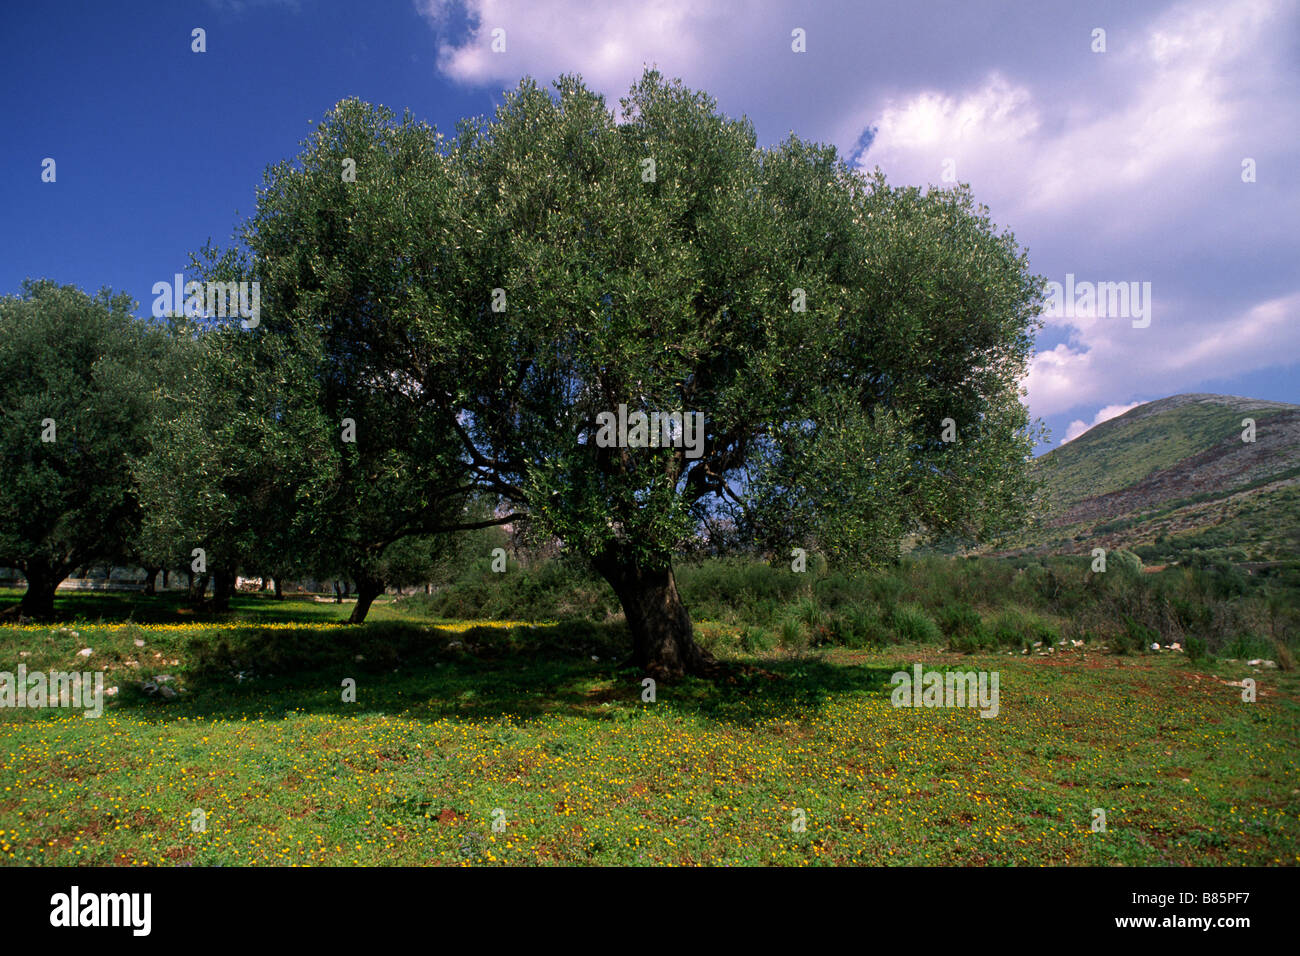 Italy, Campania, Cilento, olive tree Stock Photo